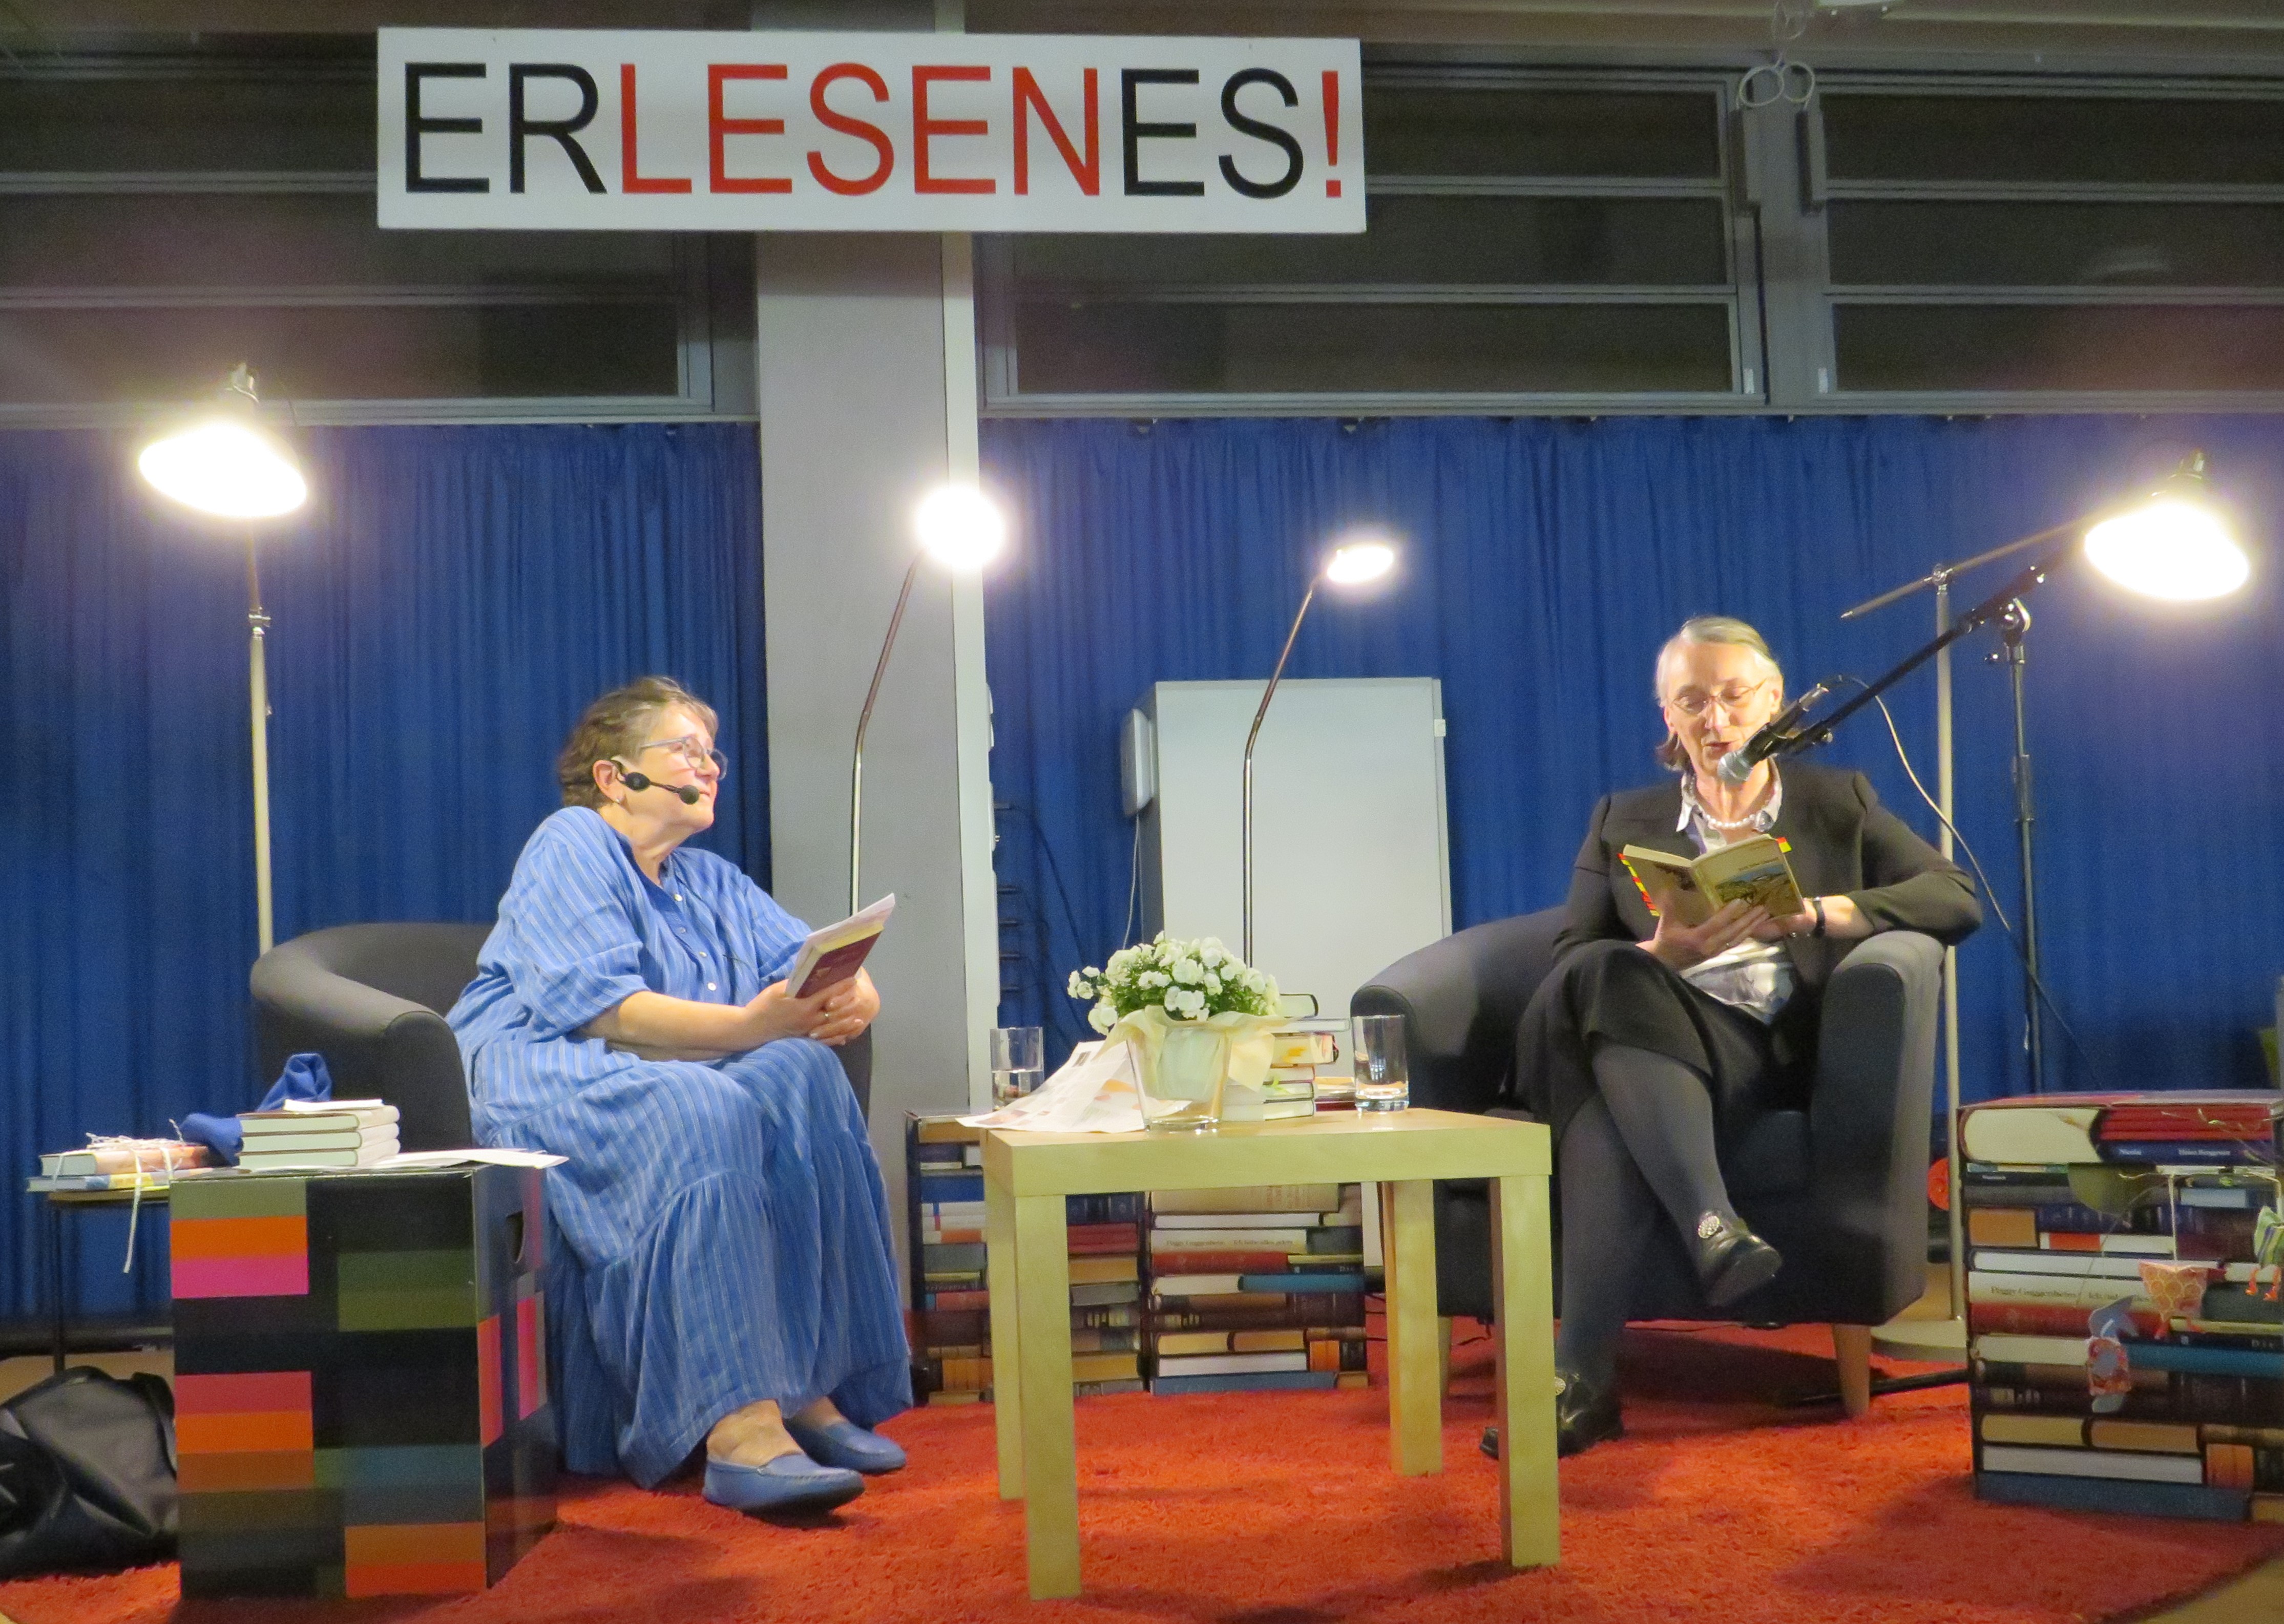  Ursula Gmähle hört zu, während Dekanin Friederike Wagner zu ihrer Rechten aus ihrem mitgebrachten Buch vorliest - das Bild wird mit Klick vergrößert 